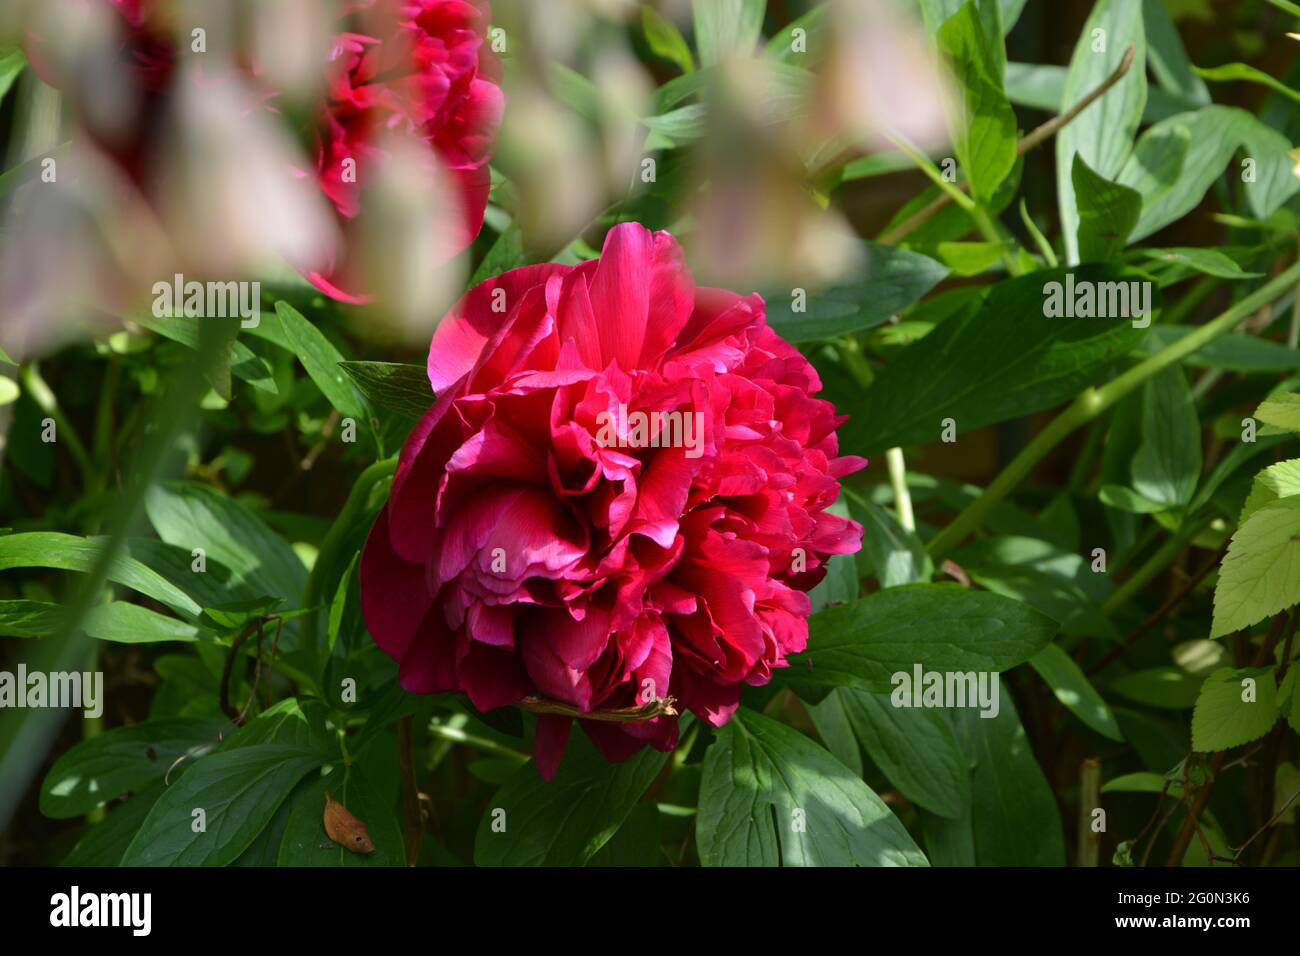 Immagine di BBC Gardeners World UK, puramente bello e tranquillo spazio floreale Foto Stock